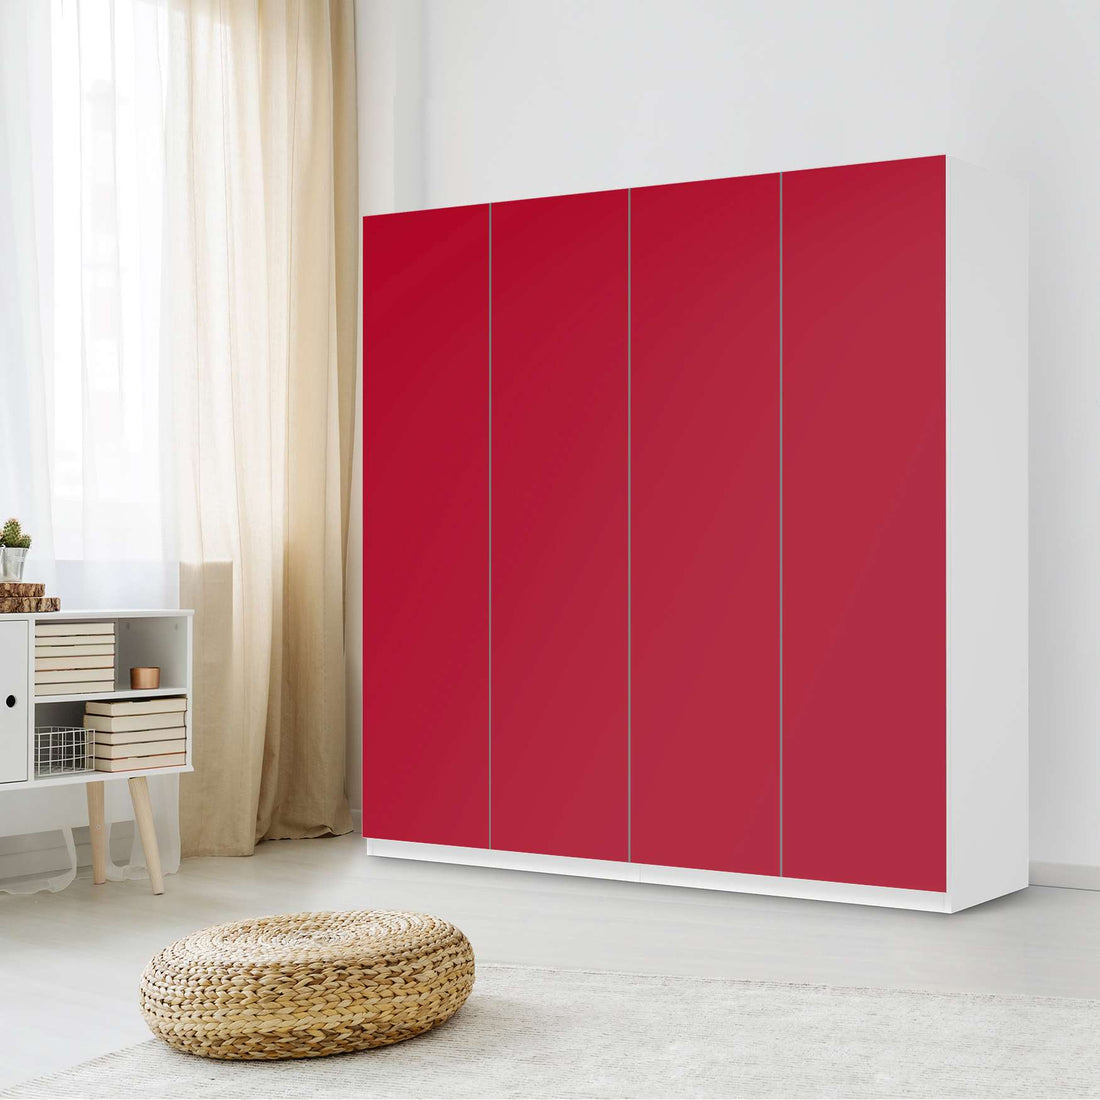 Klebefolie für Schränke Rot Dark - IKEA Pax Schrank 201 cm Höhe - 4 Türen - Schlafzimmer